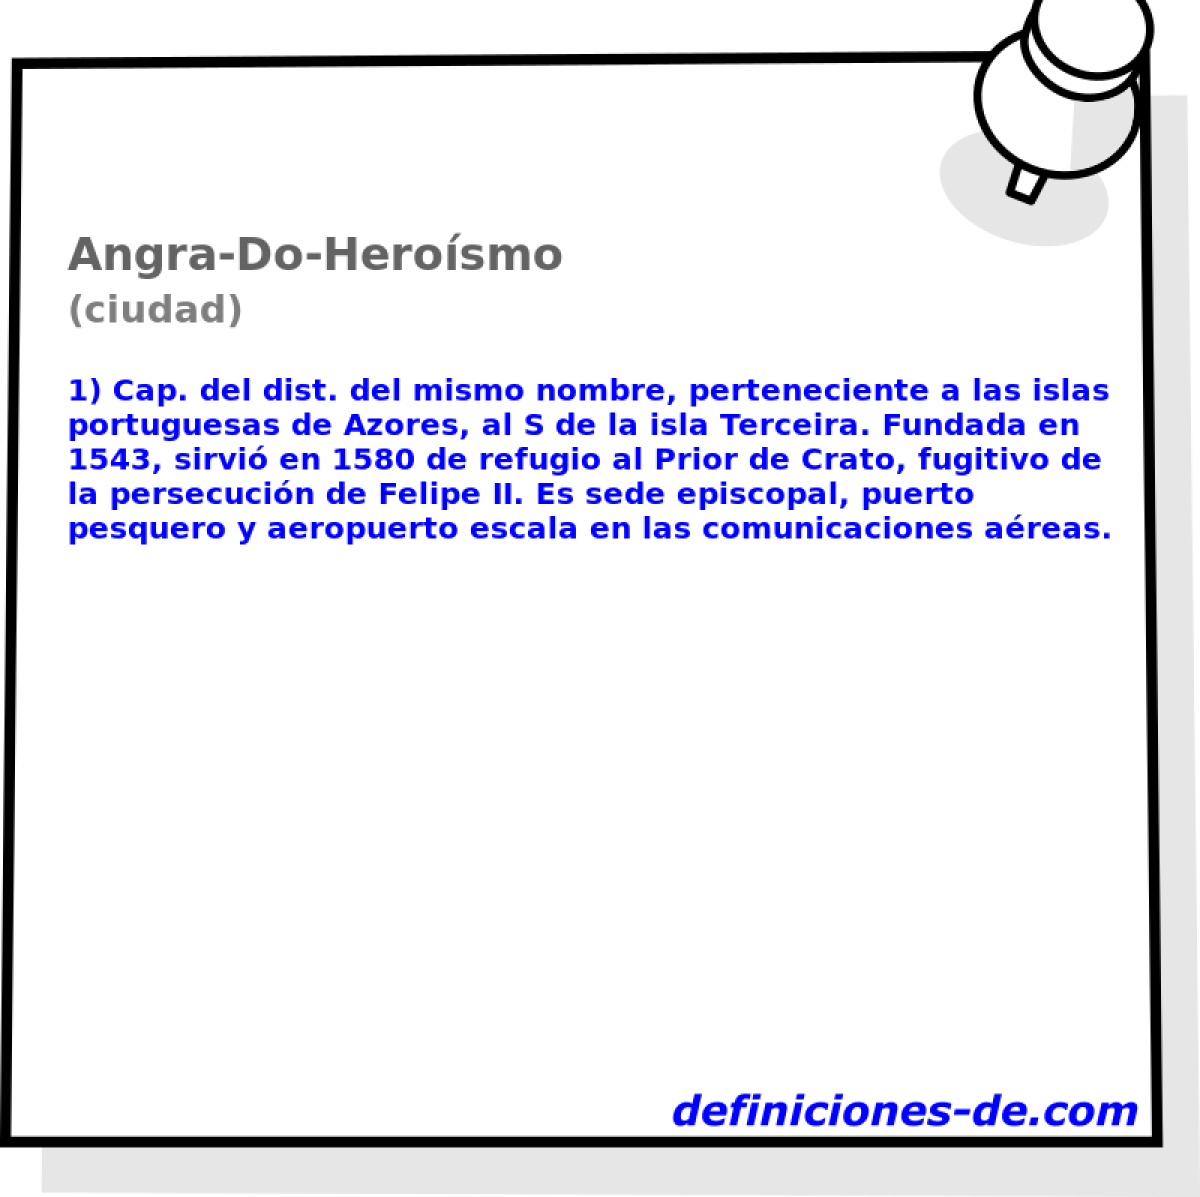 Angra-Do-Herosmo (ciudad)